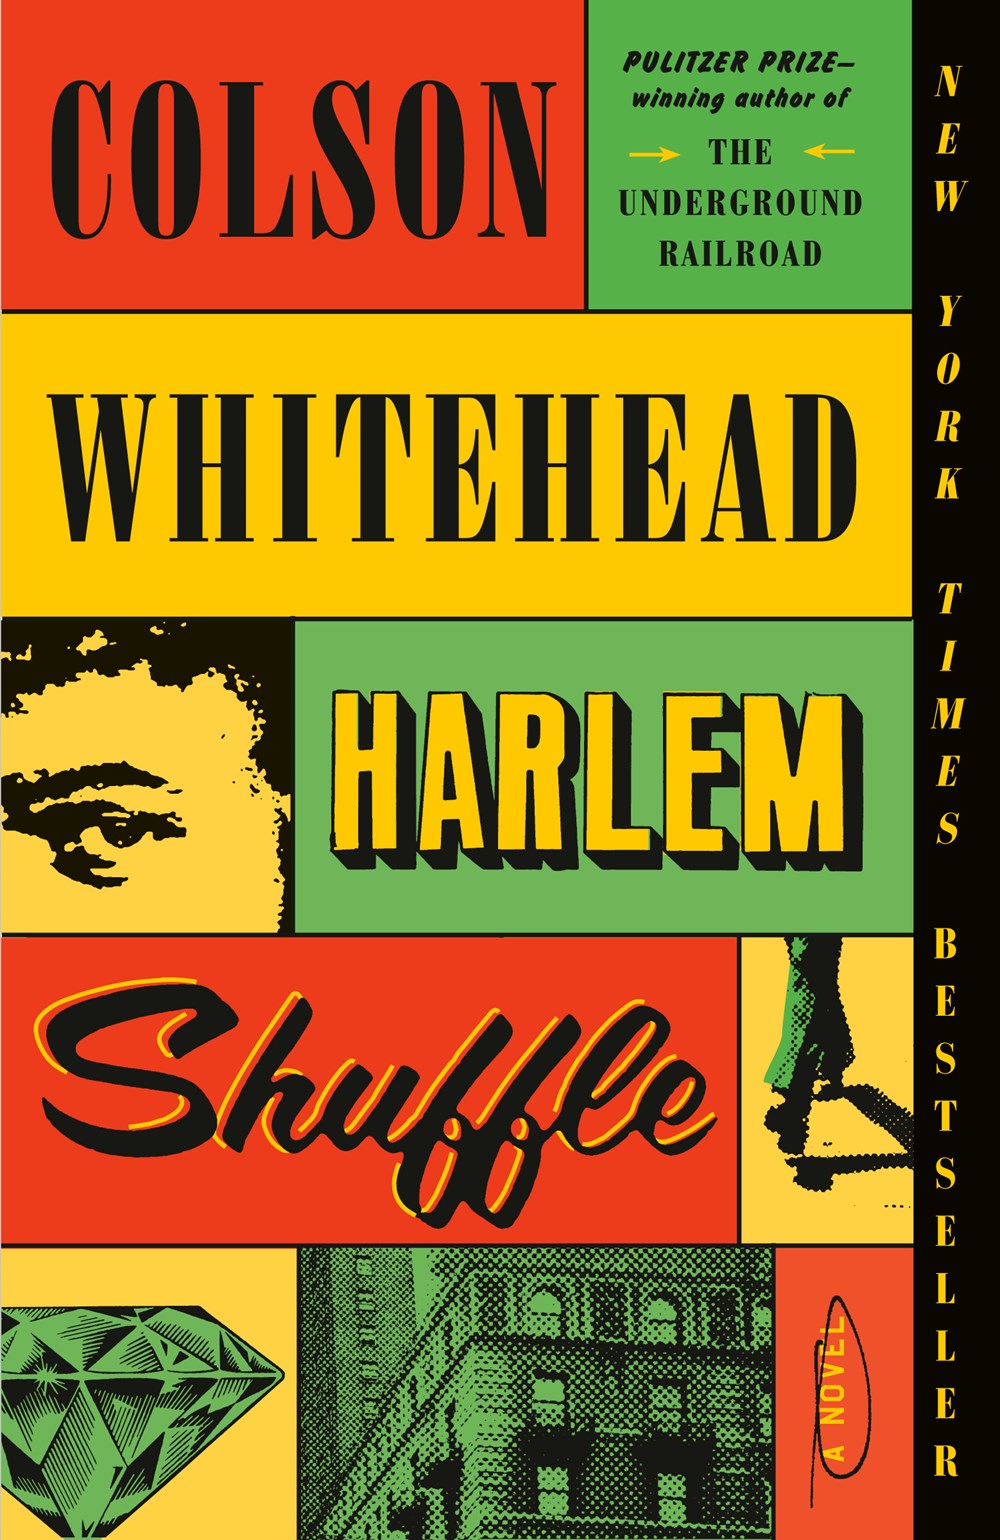 Harlem Shuffle cover image